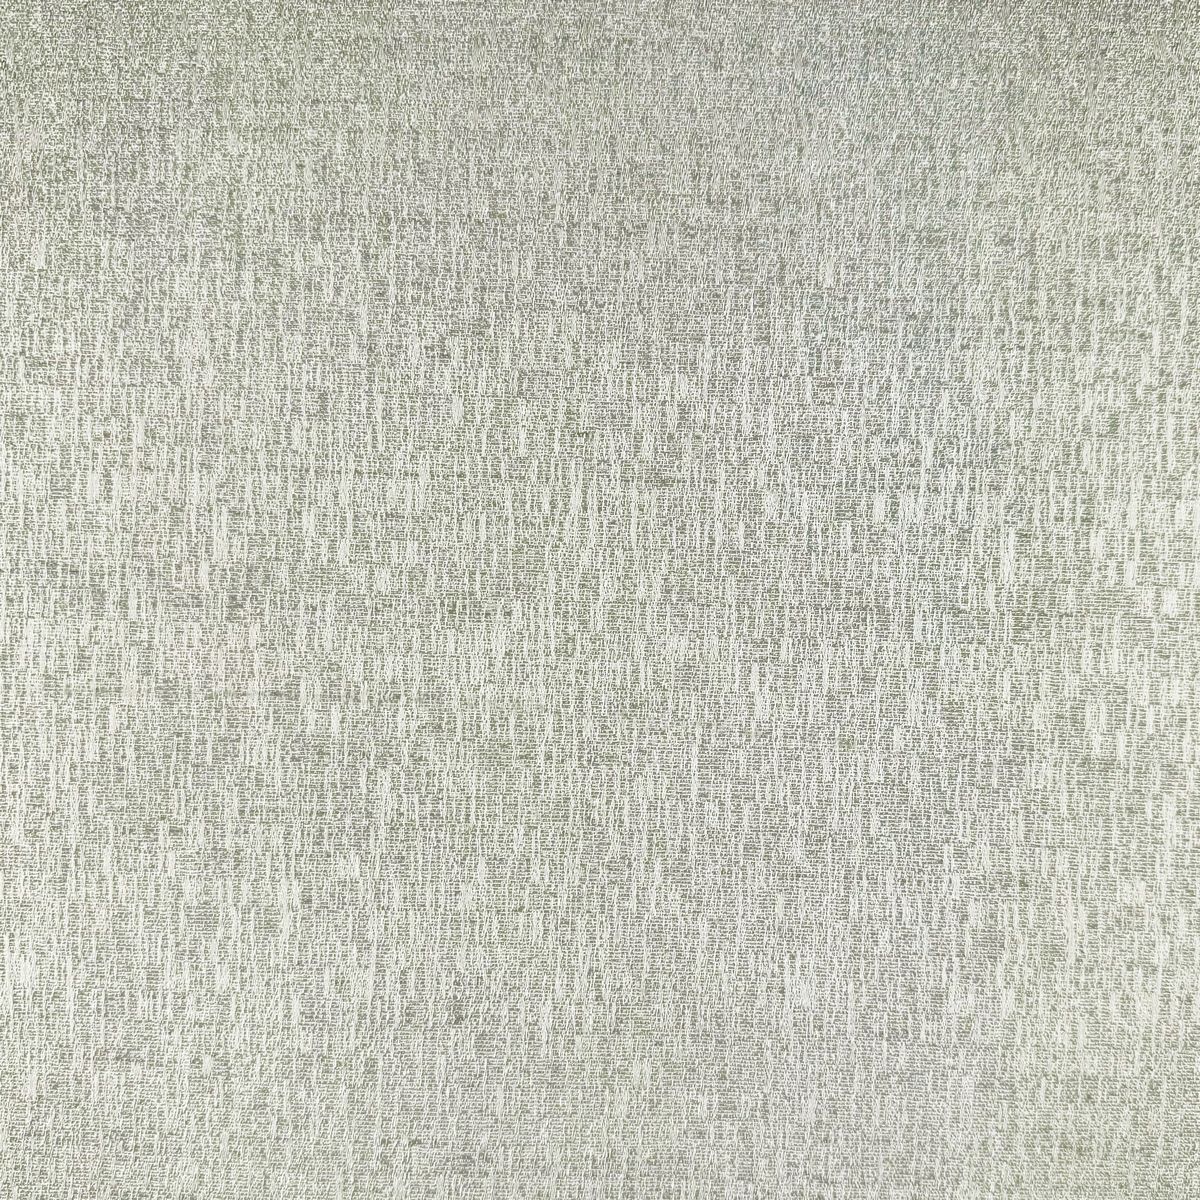 Petworth Silver Fabric by Chatham Glyn